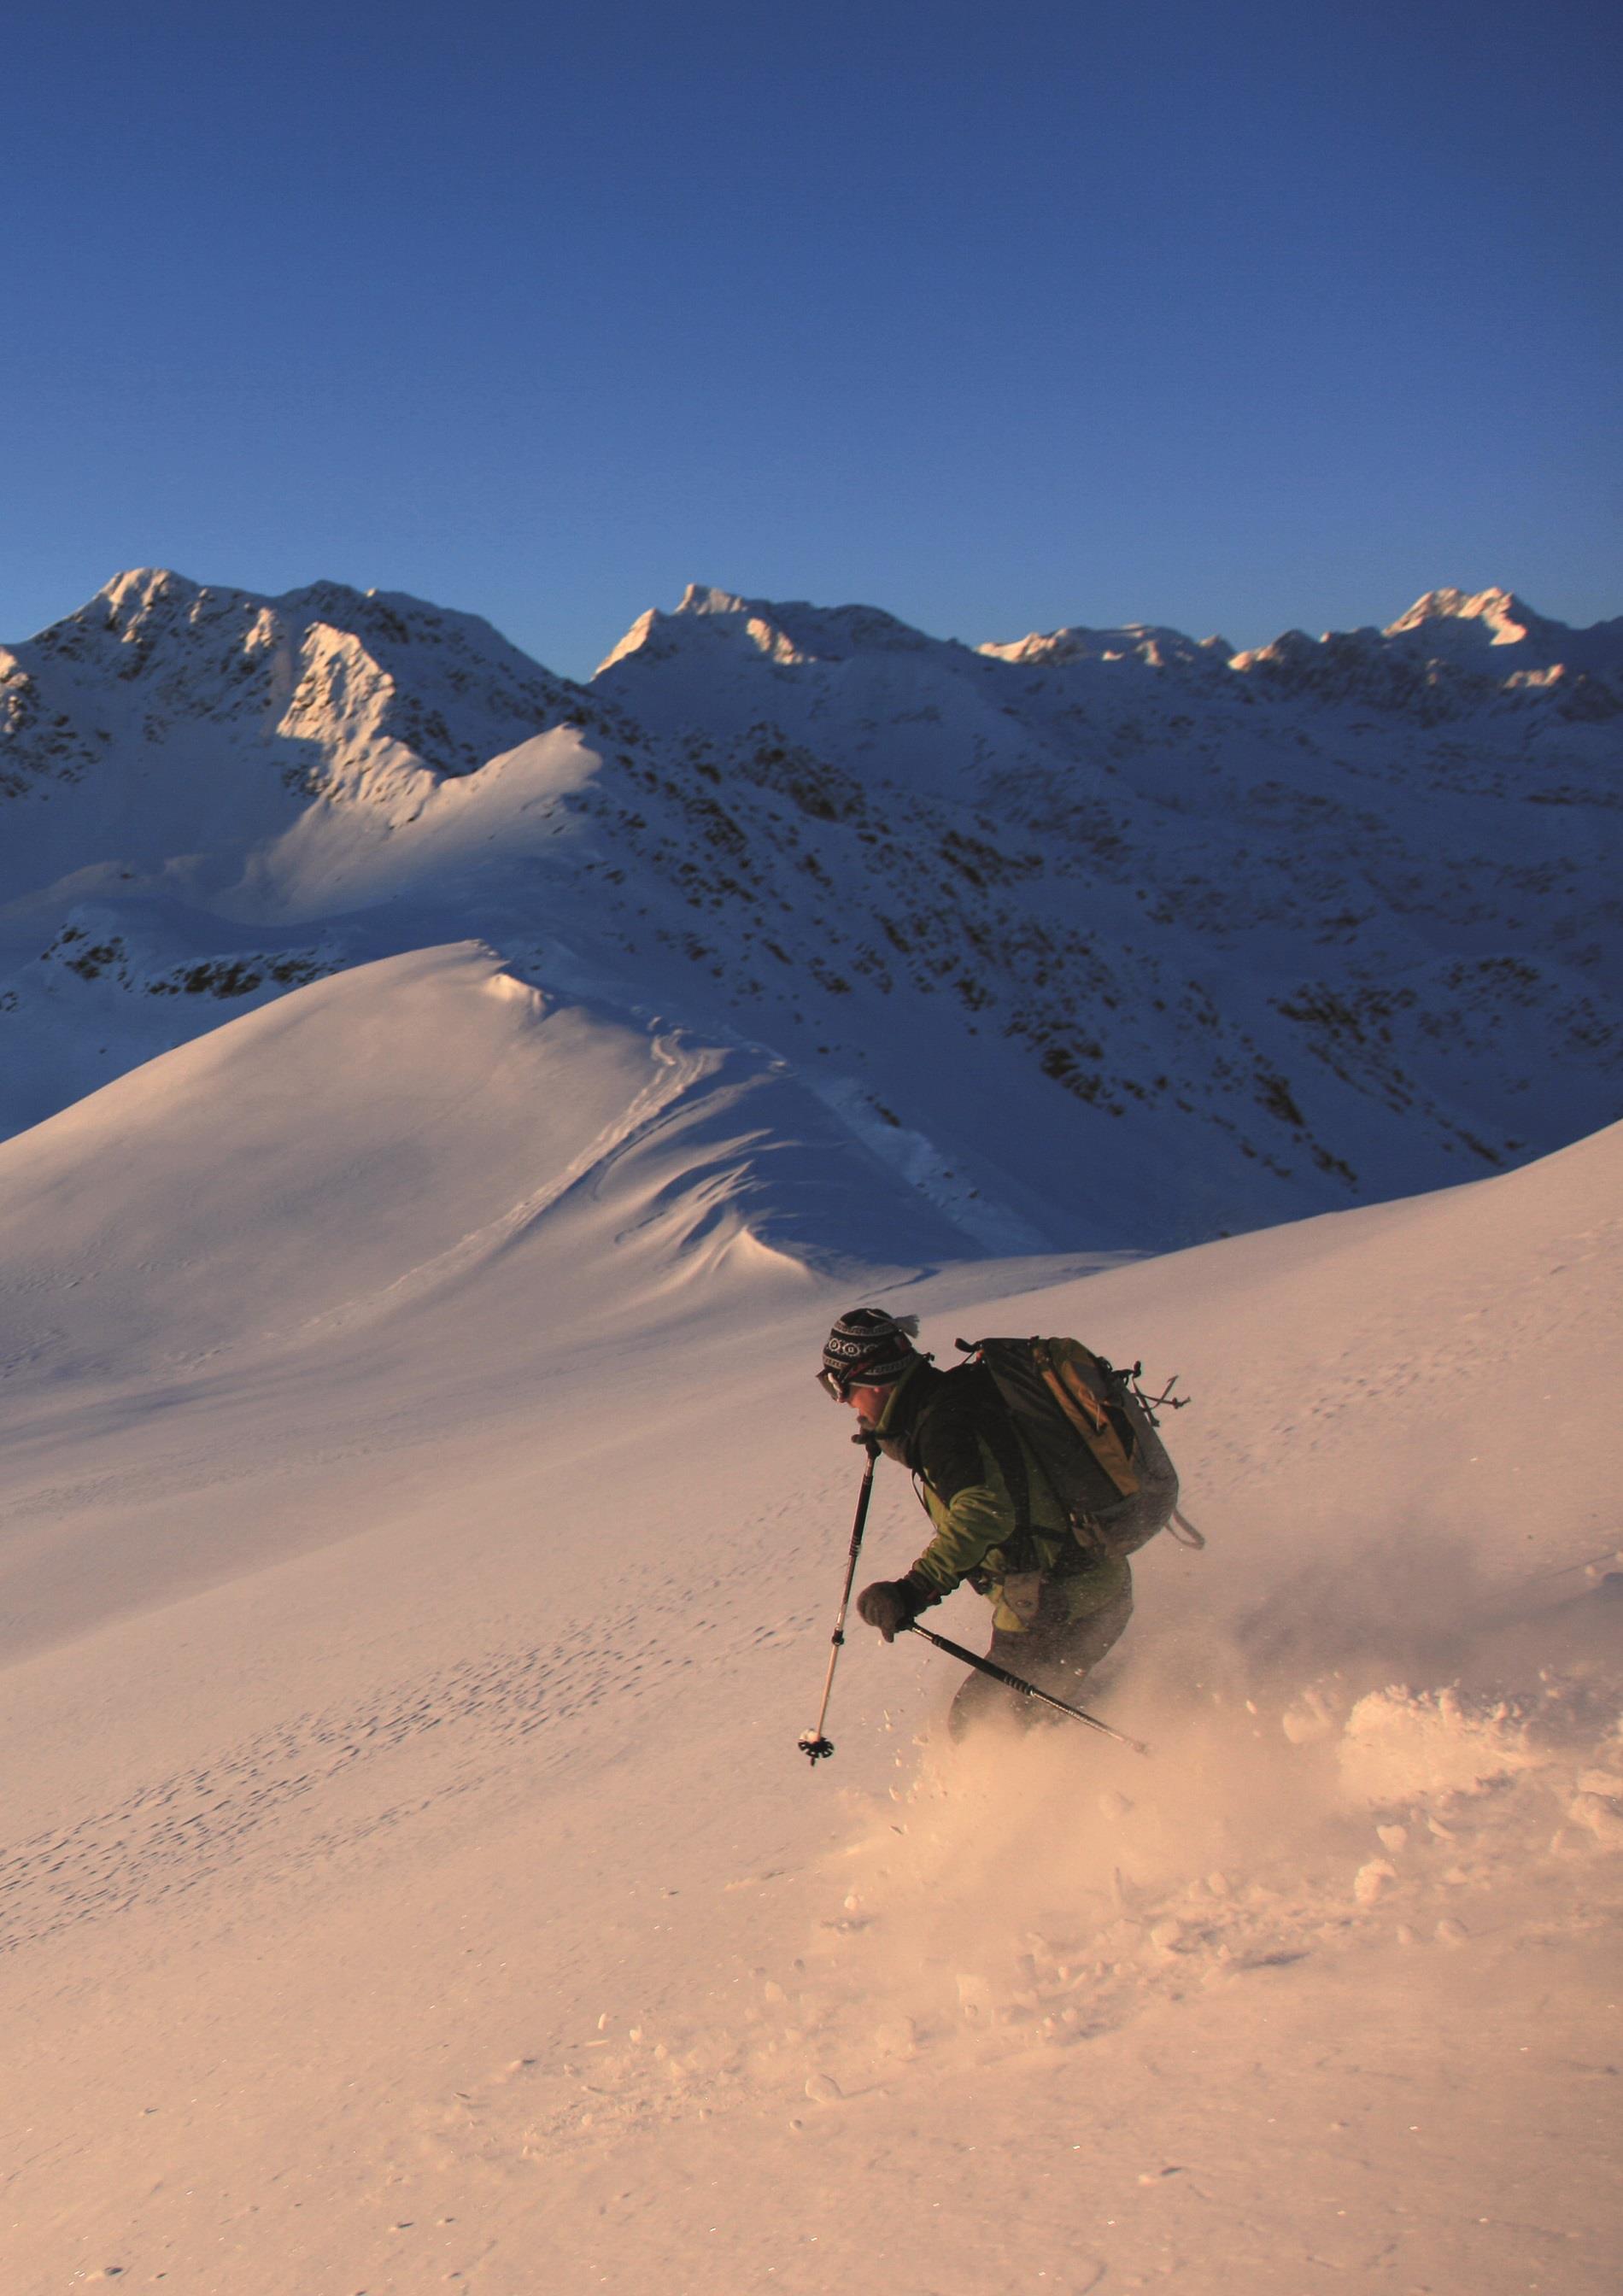 Ski Tour to the Alpenspitze Peak